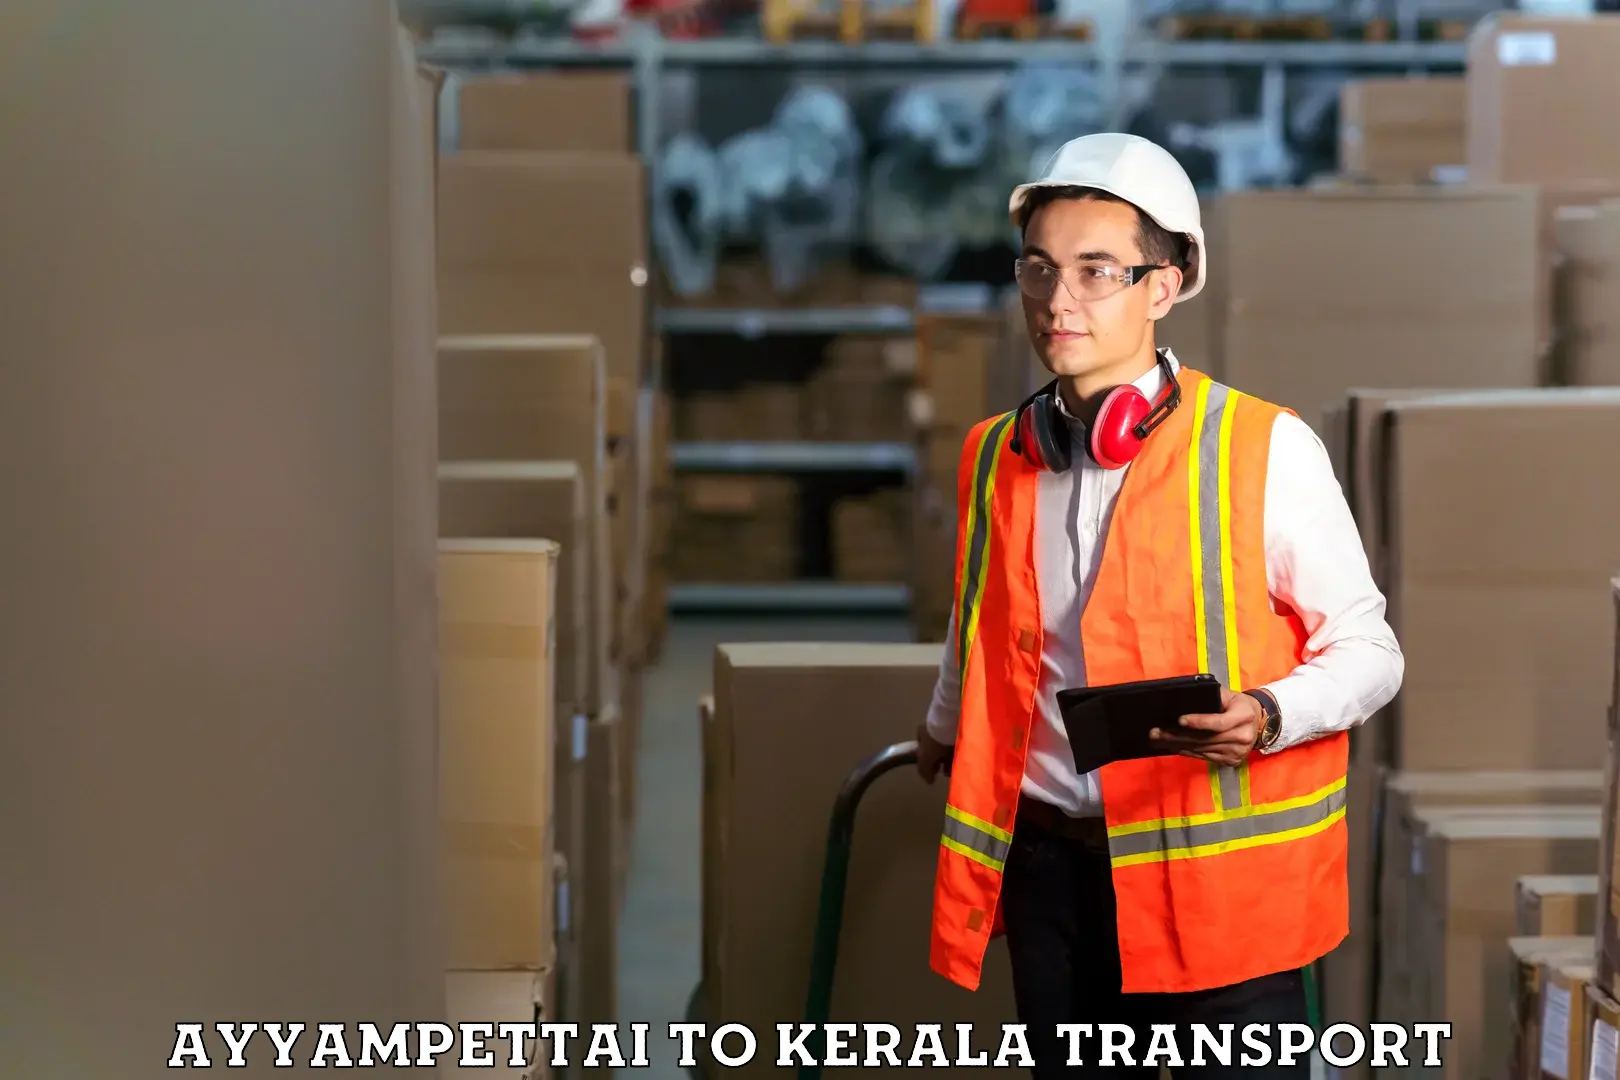 Lorry transport service Ayyampettai to Kerala